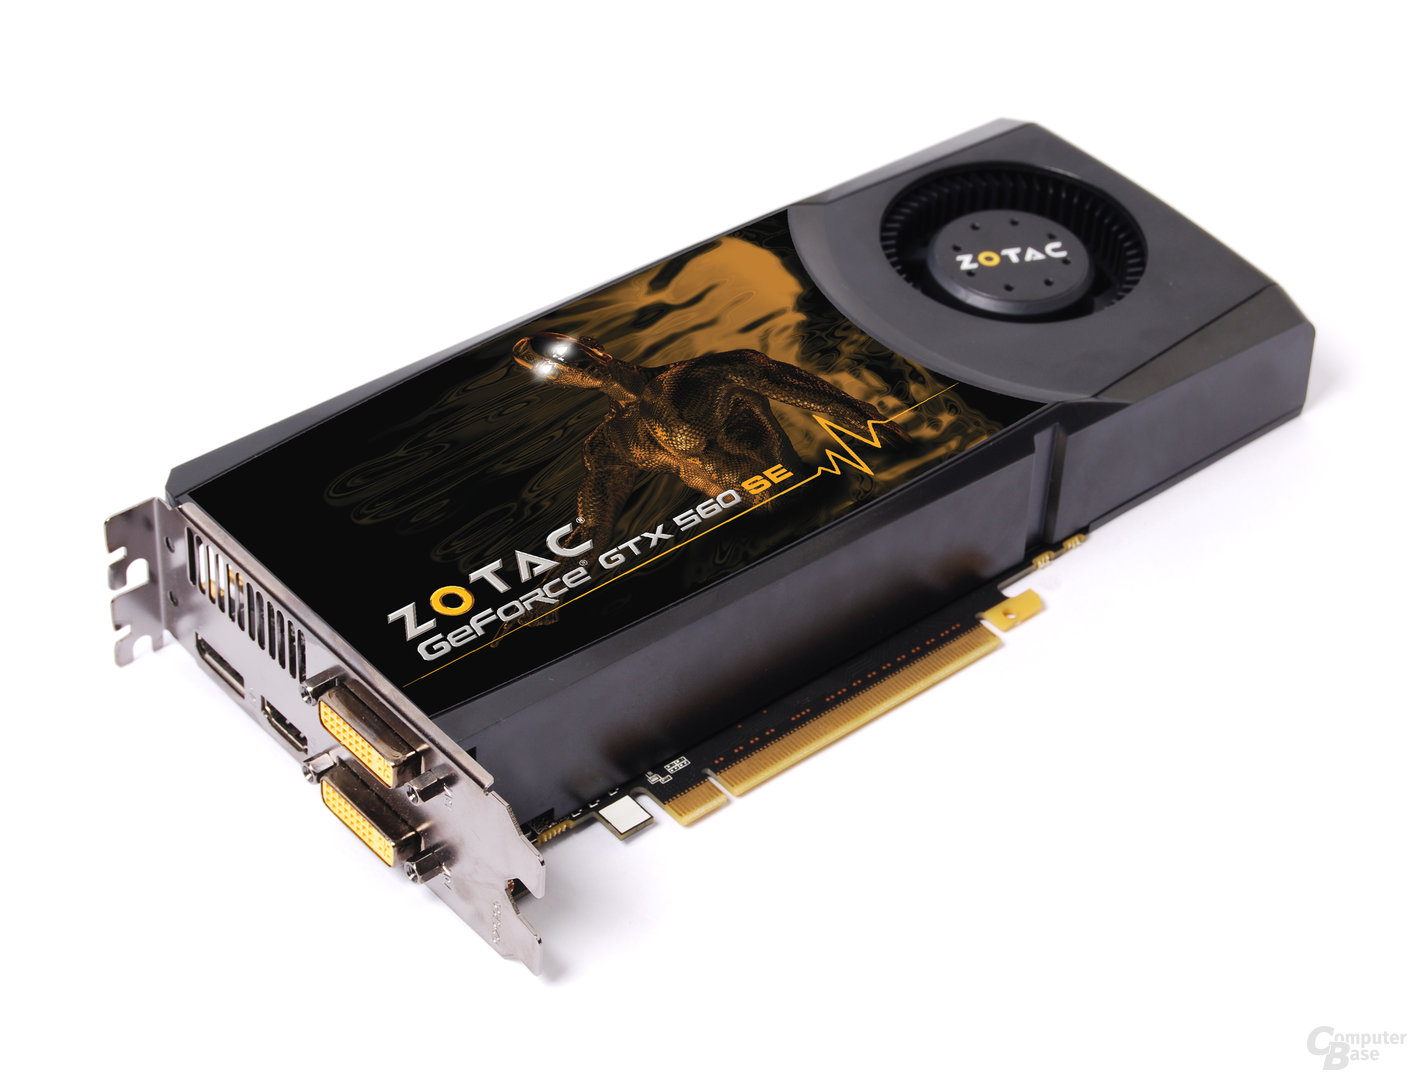 Zotac GeForce GTX 560 SE